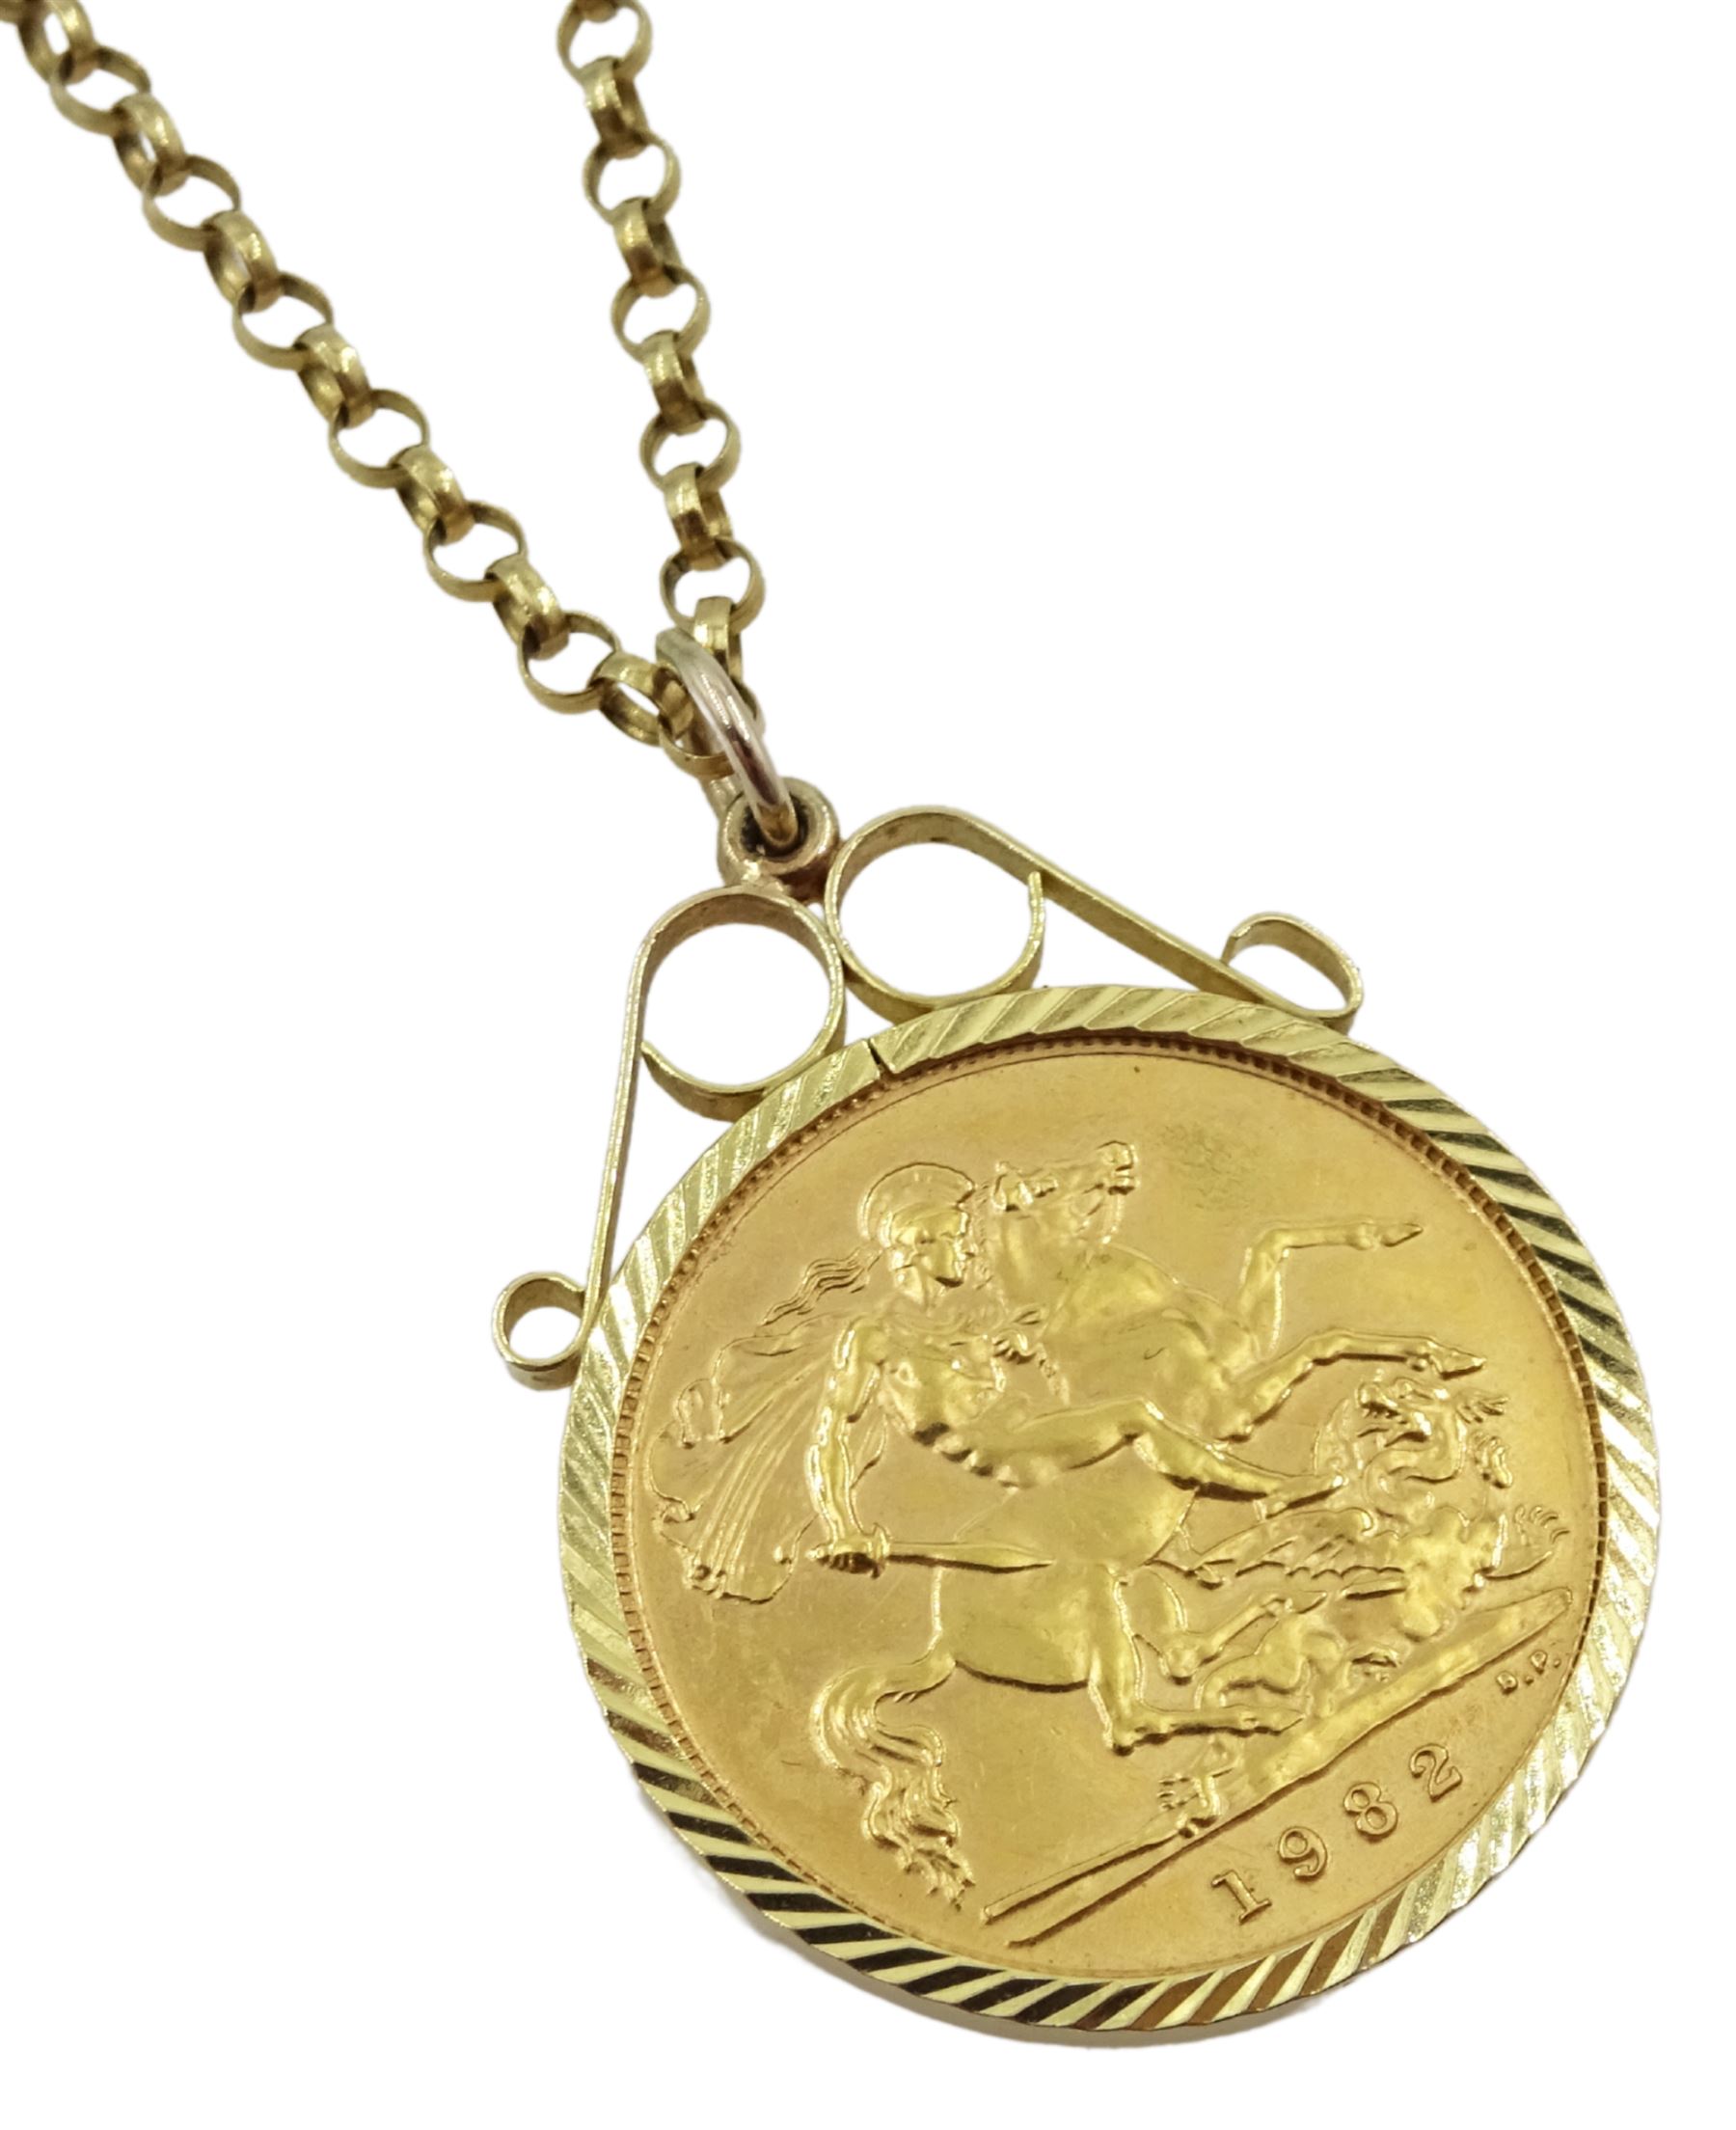 Elizabeth II 1982 gold half sovereign - Image 2 of 3